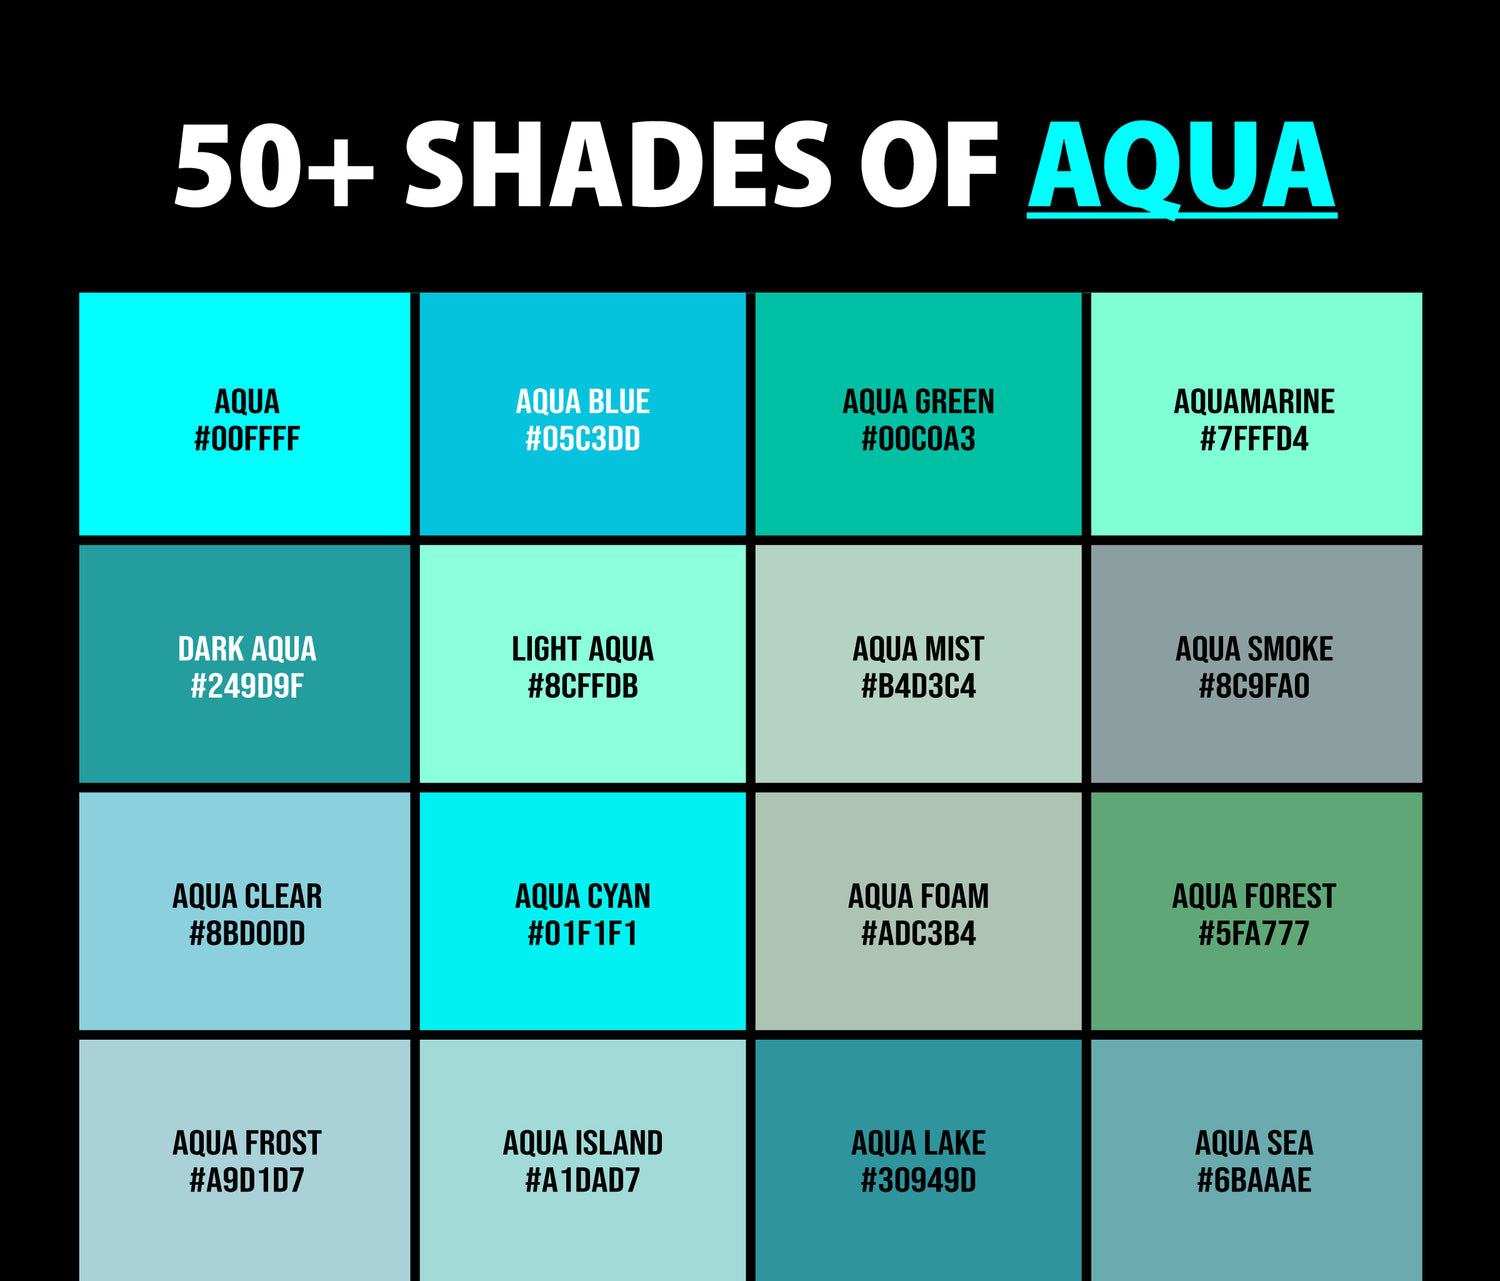 50+ Shades of Aqua Color (Names, HEX, RGB, & CMYK Codes) – CreativeBooster